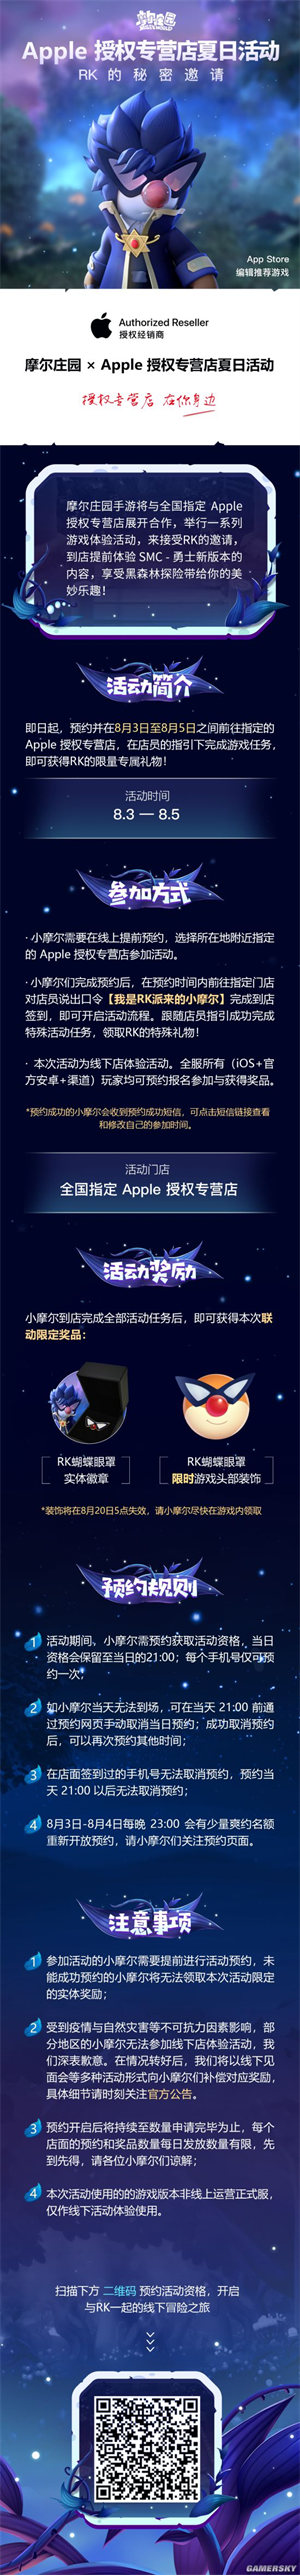 《摩尔庄园手游》 X Apple授权专营店夏日限定联动活动正式开始截图